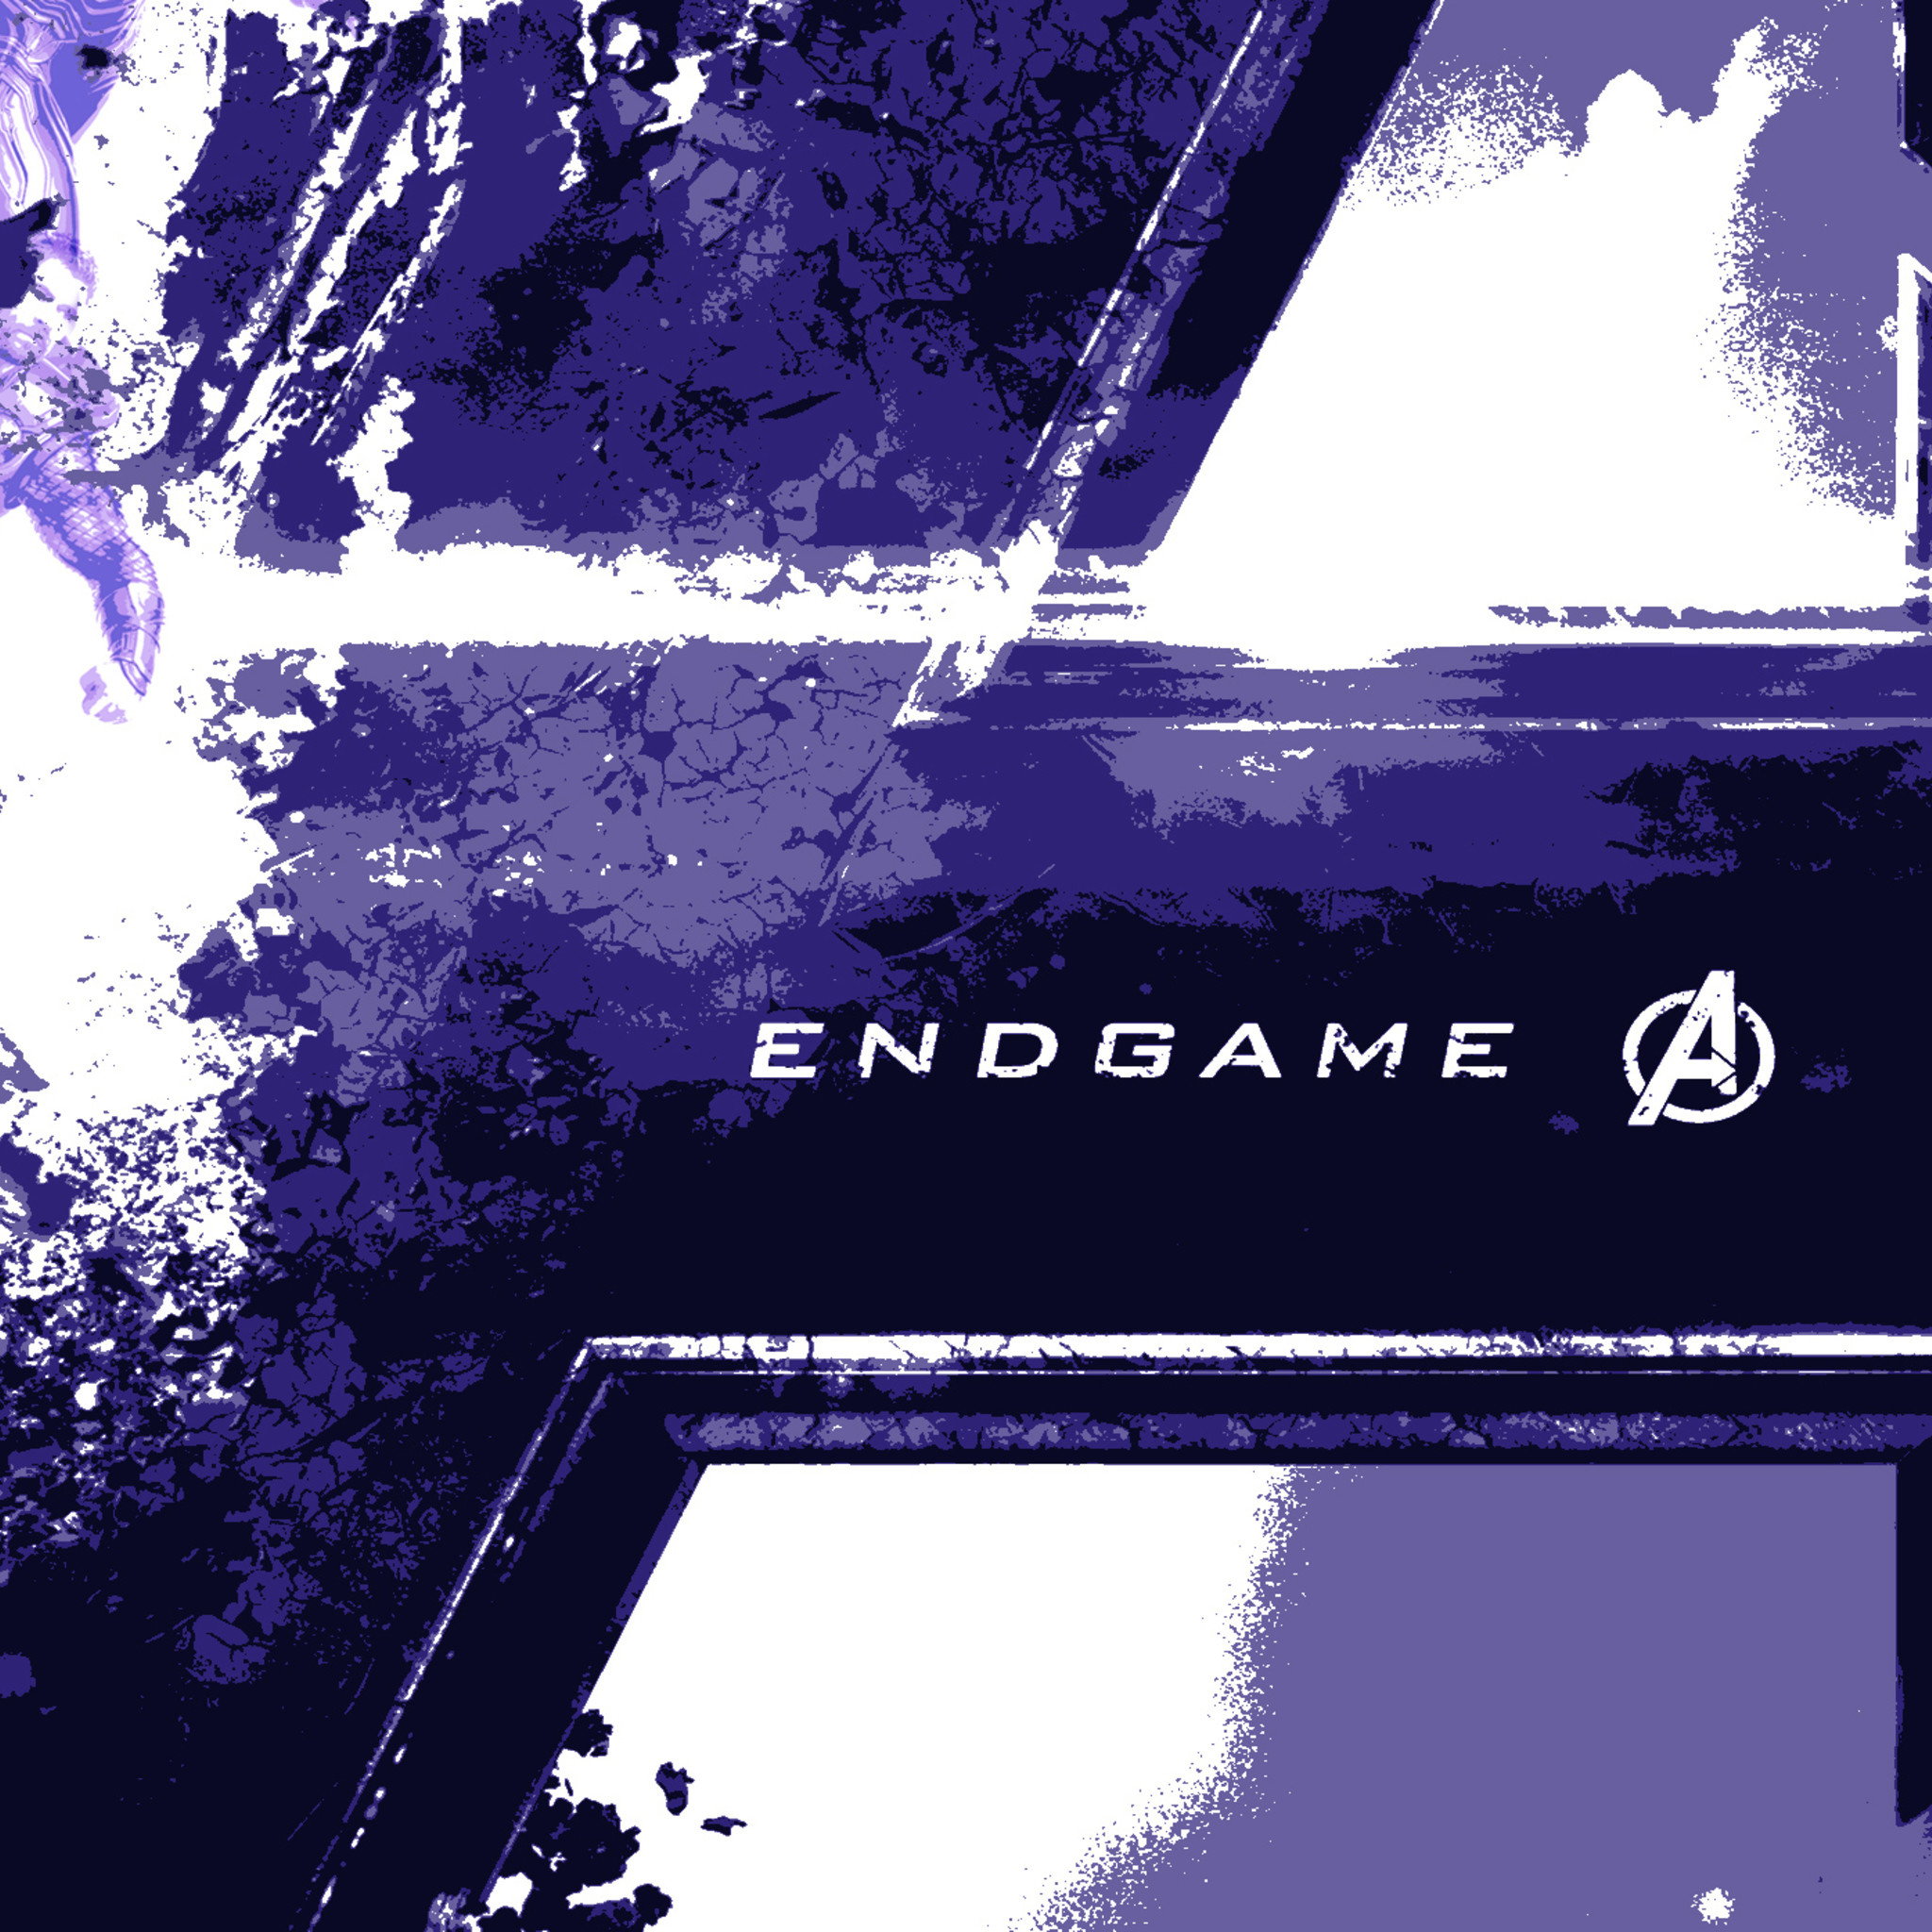 2048x2048 Avengers Endgame Logo Wallpaper